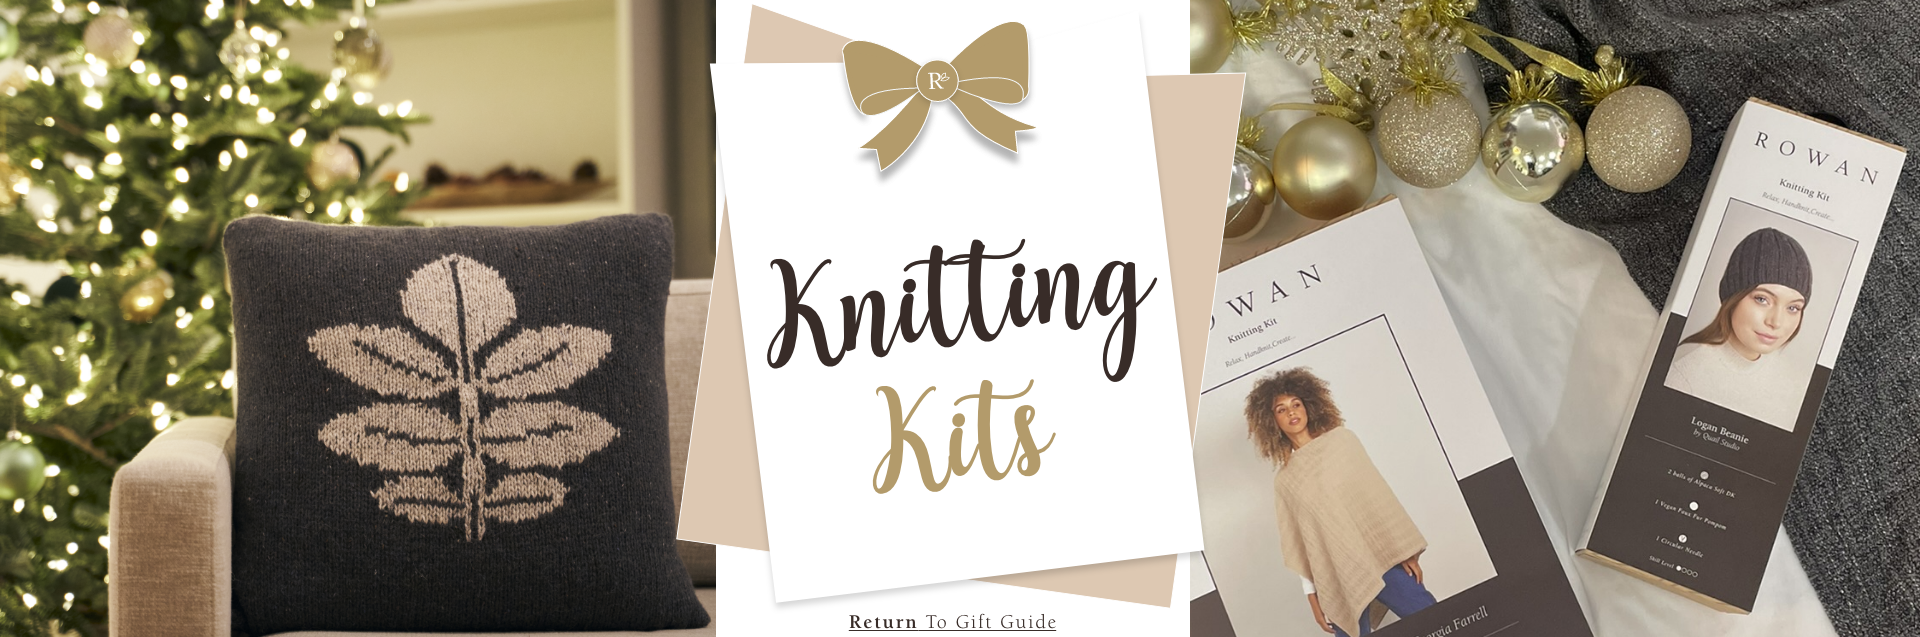 knitting kits banner